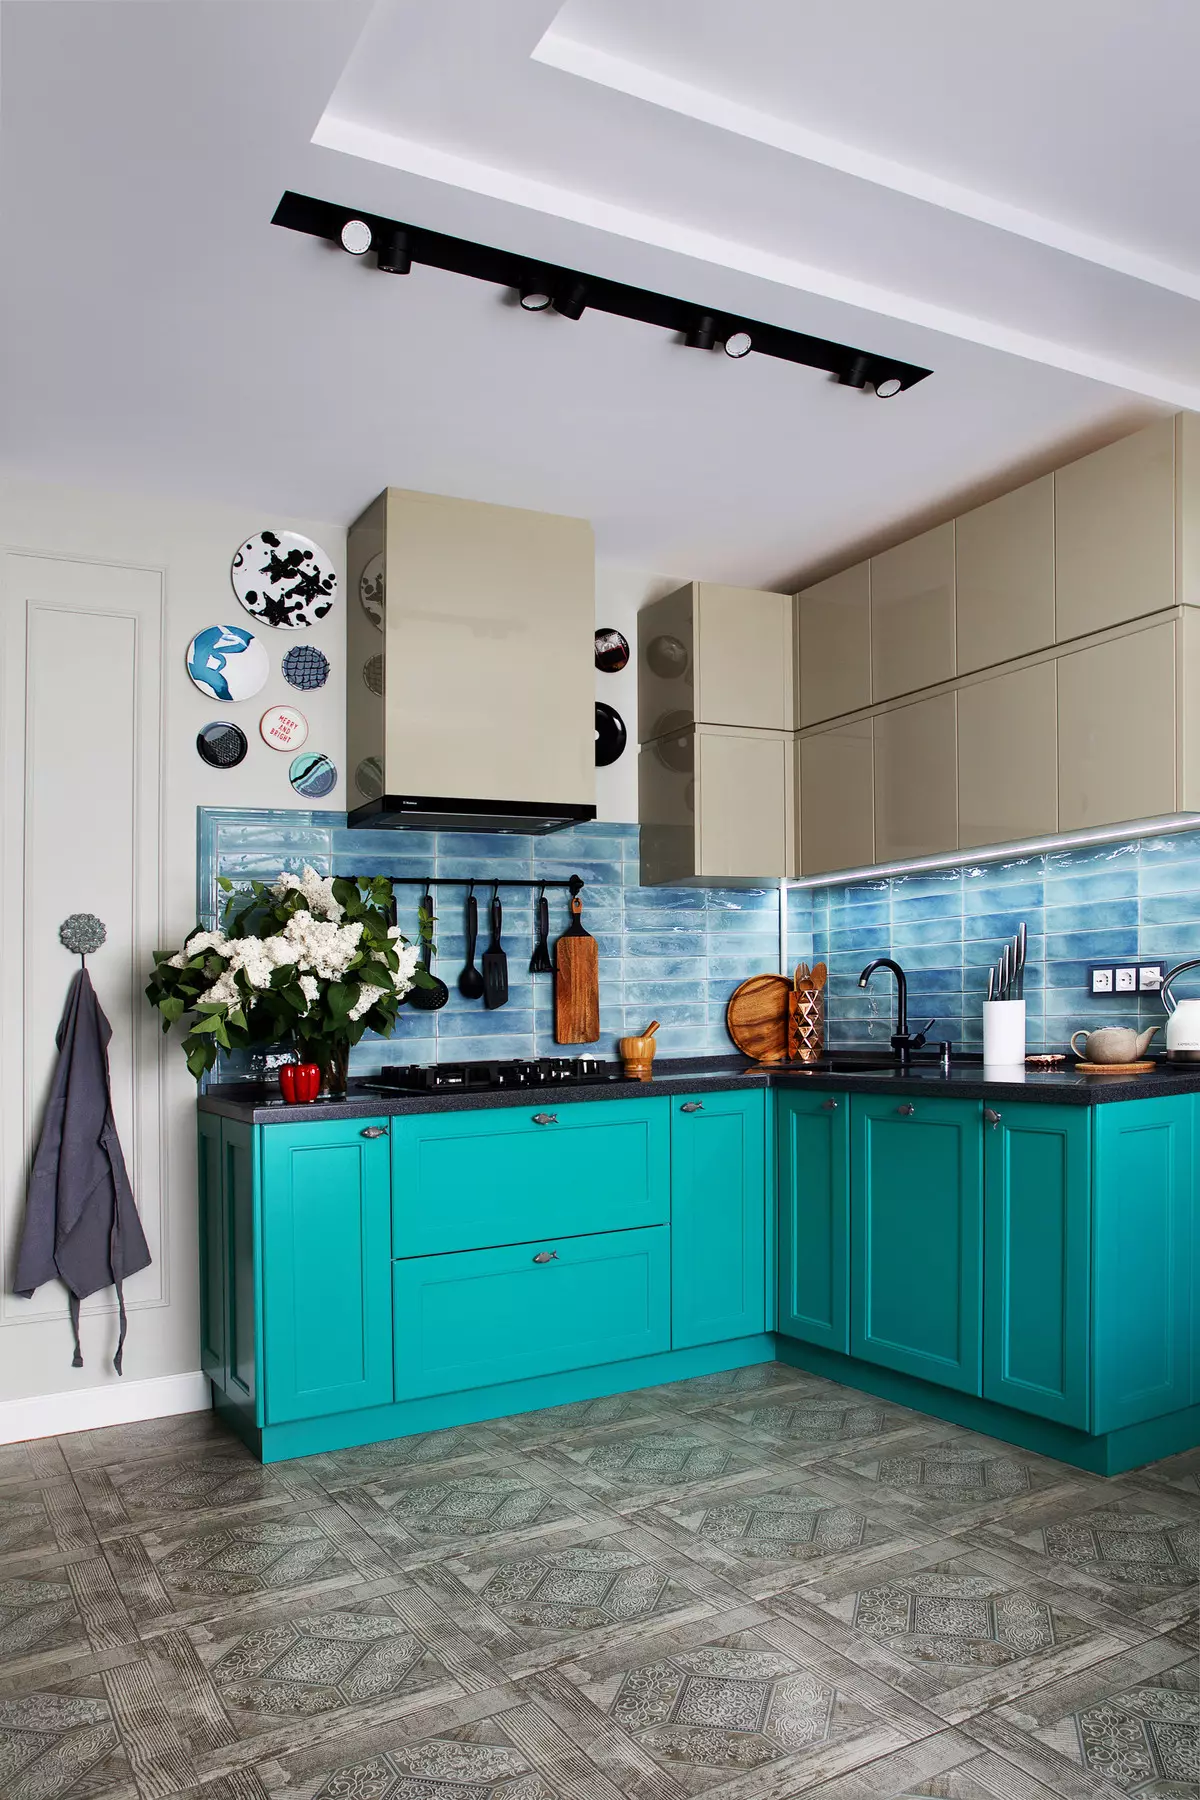 آشپزخانه آبی (82 عکس): چه رنگی در داخل یک آشپزخانه آبی ترکیب شده است؟ طراحی آشپزخانه در آبی رنگ آبی و آبی تیره 9555_22